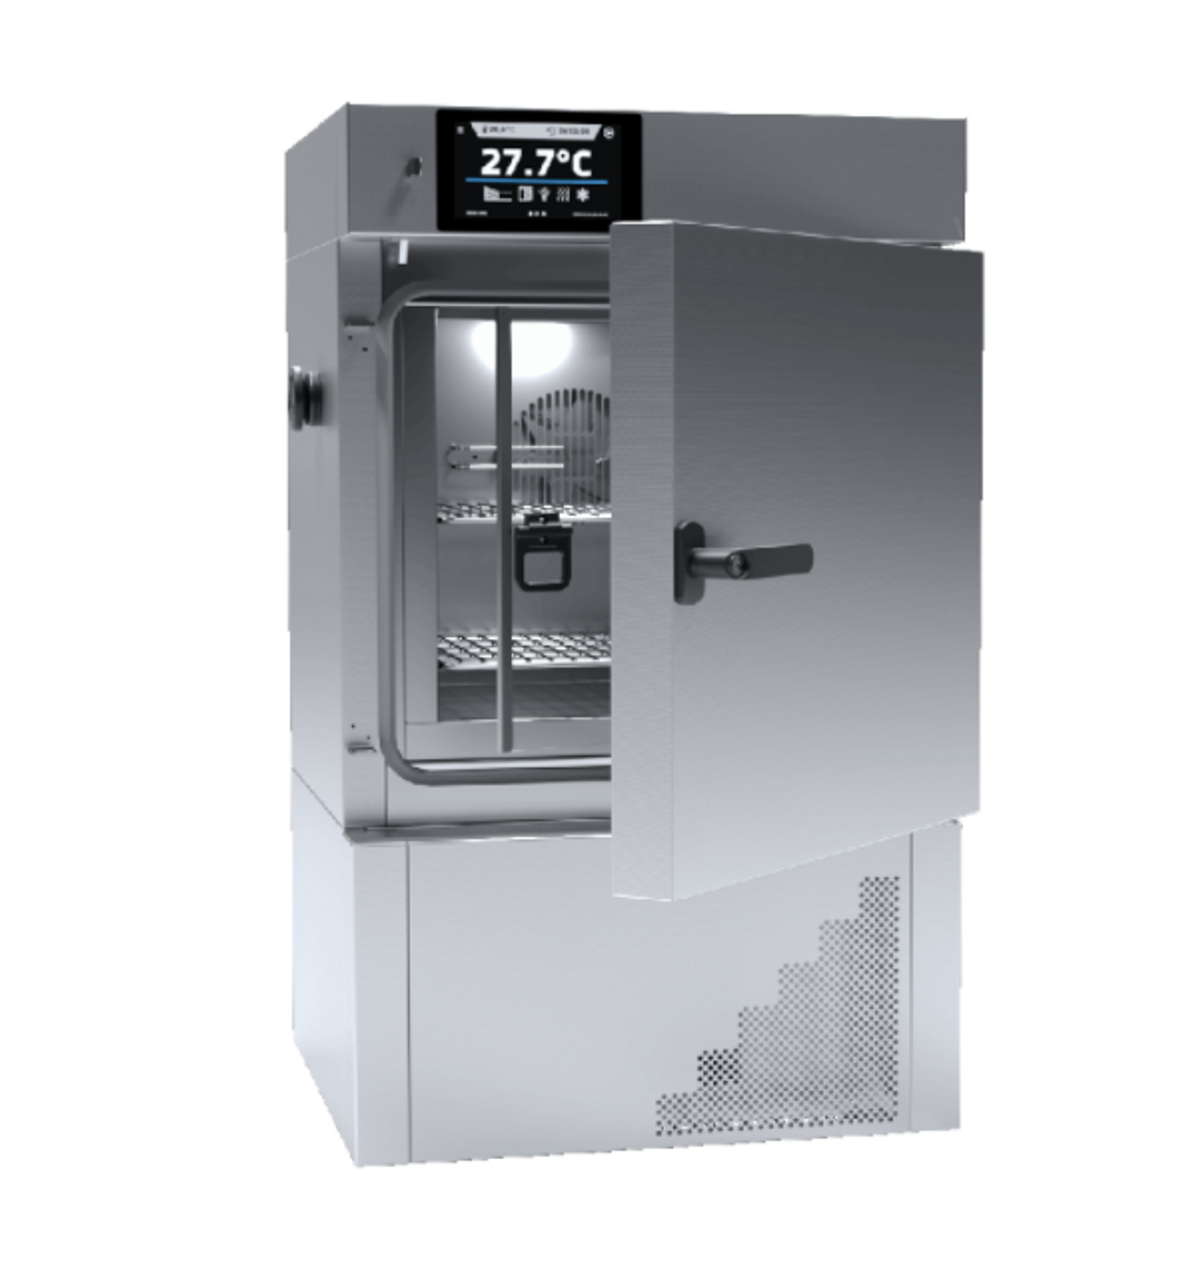 ILW 53 smart cooled incubator